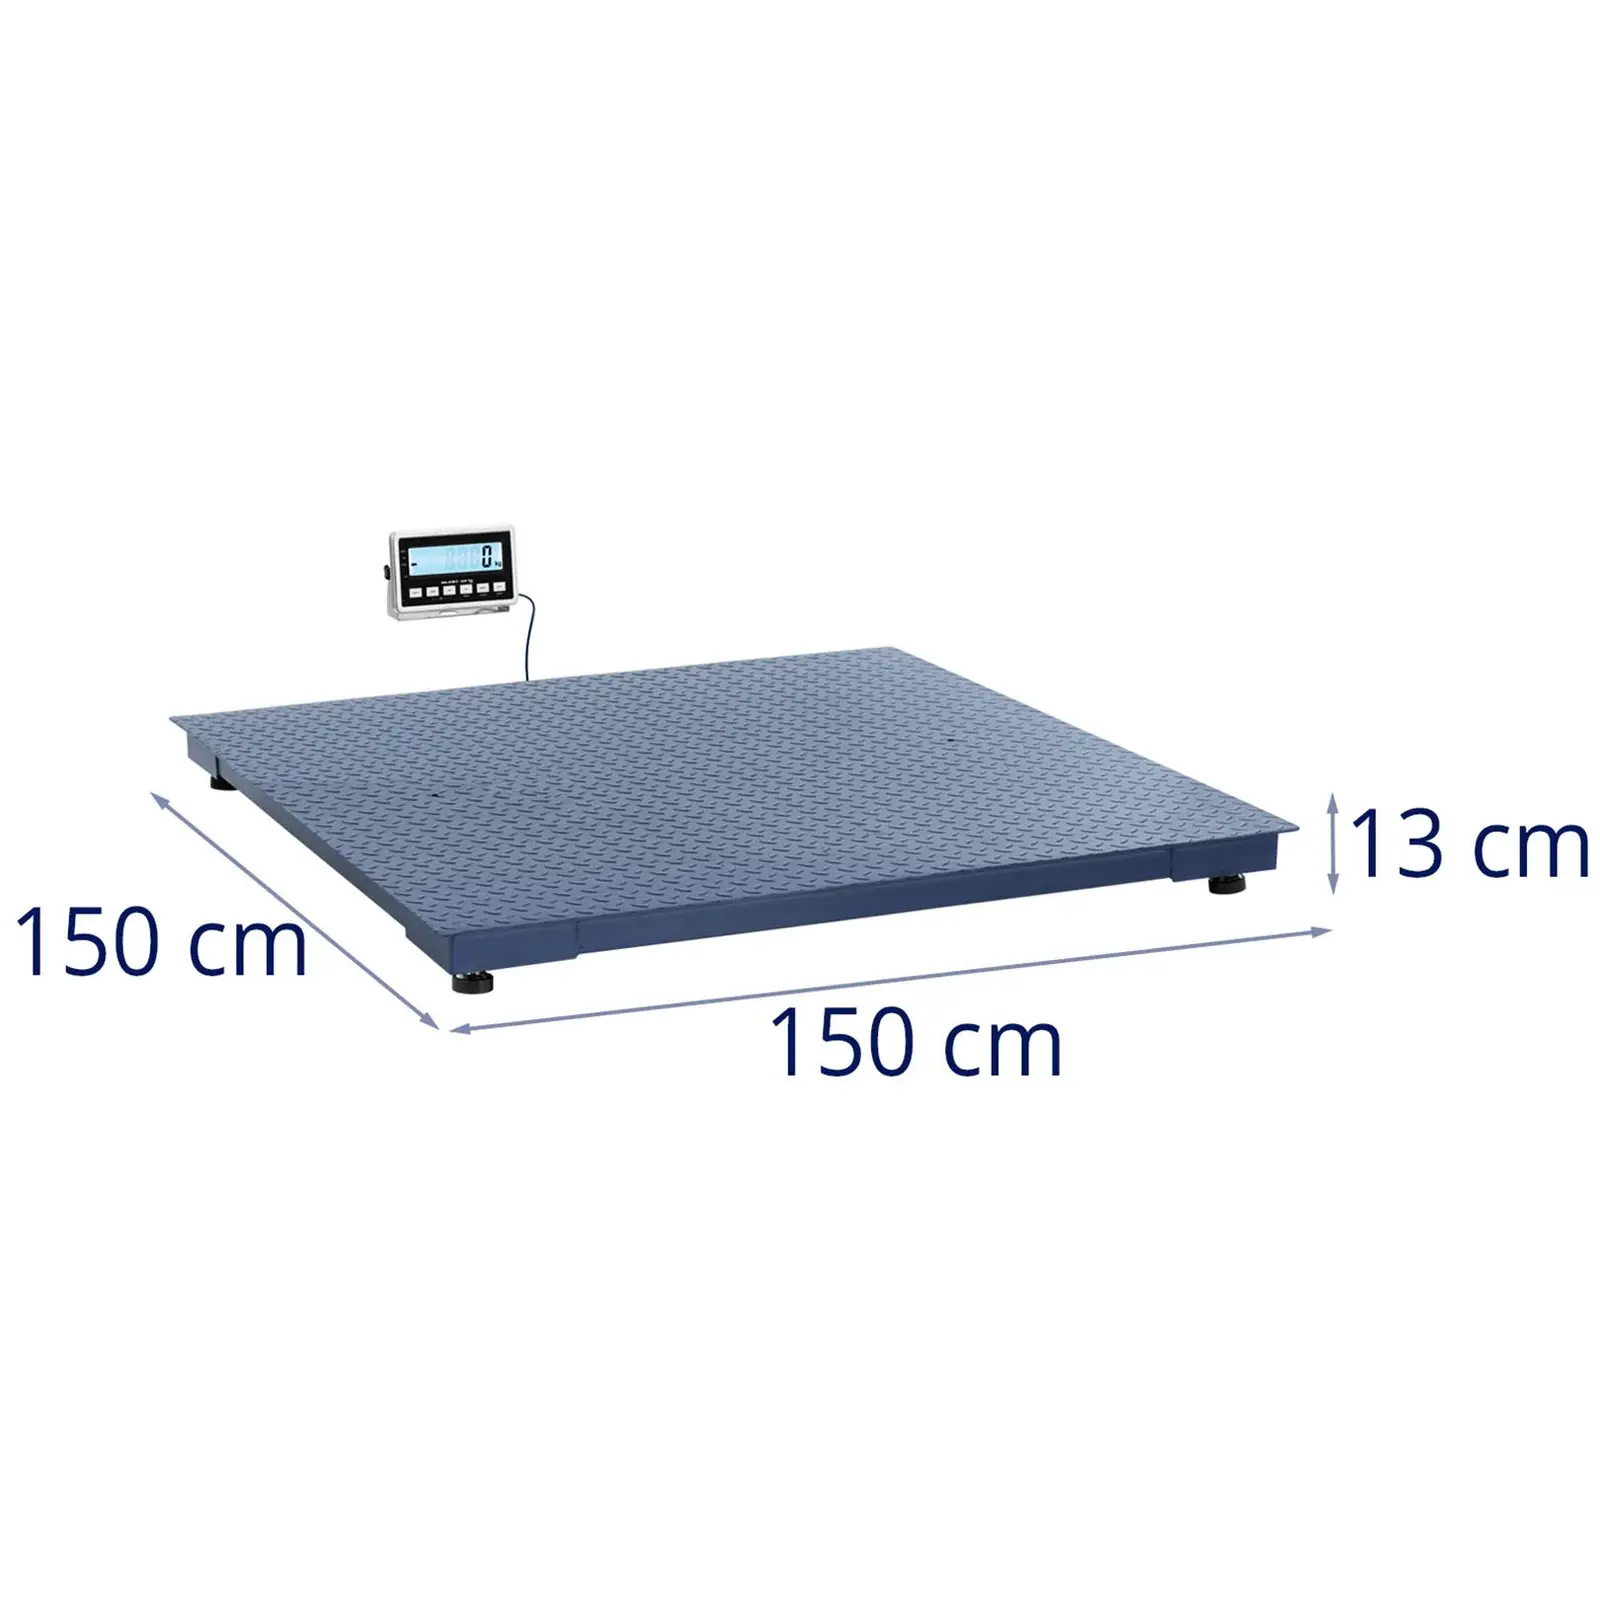 Golvvåg - 3000 kg/1 kg - 1500 x 1500 mm - LCD